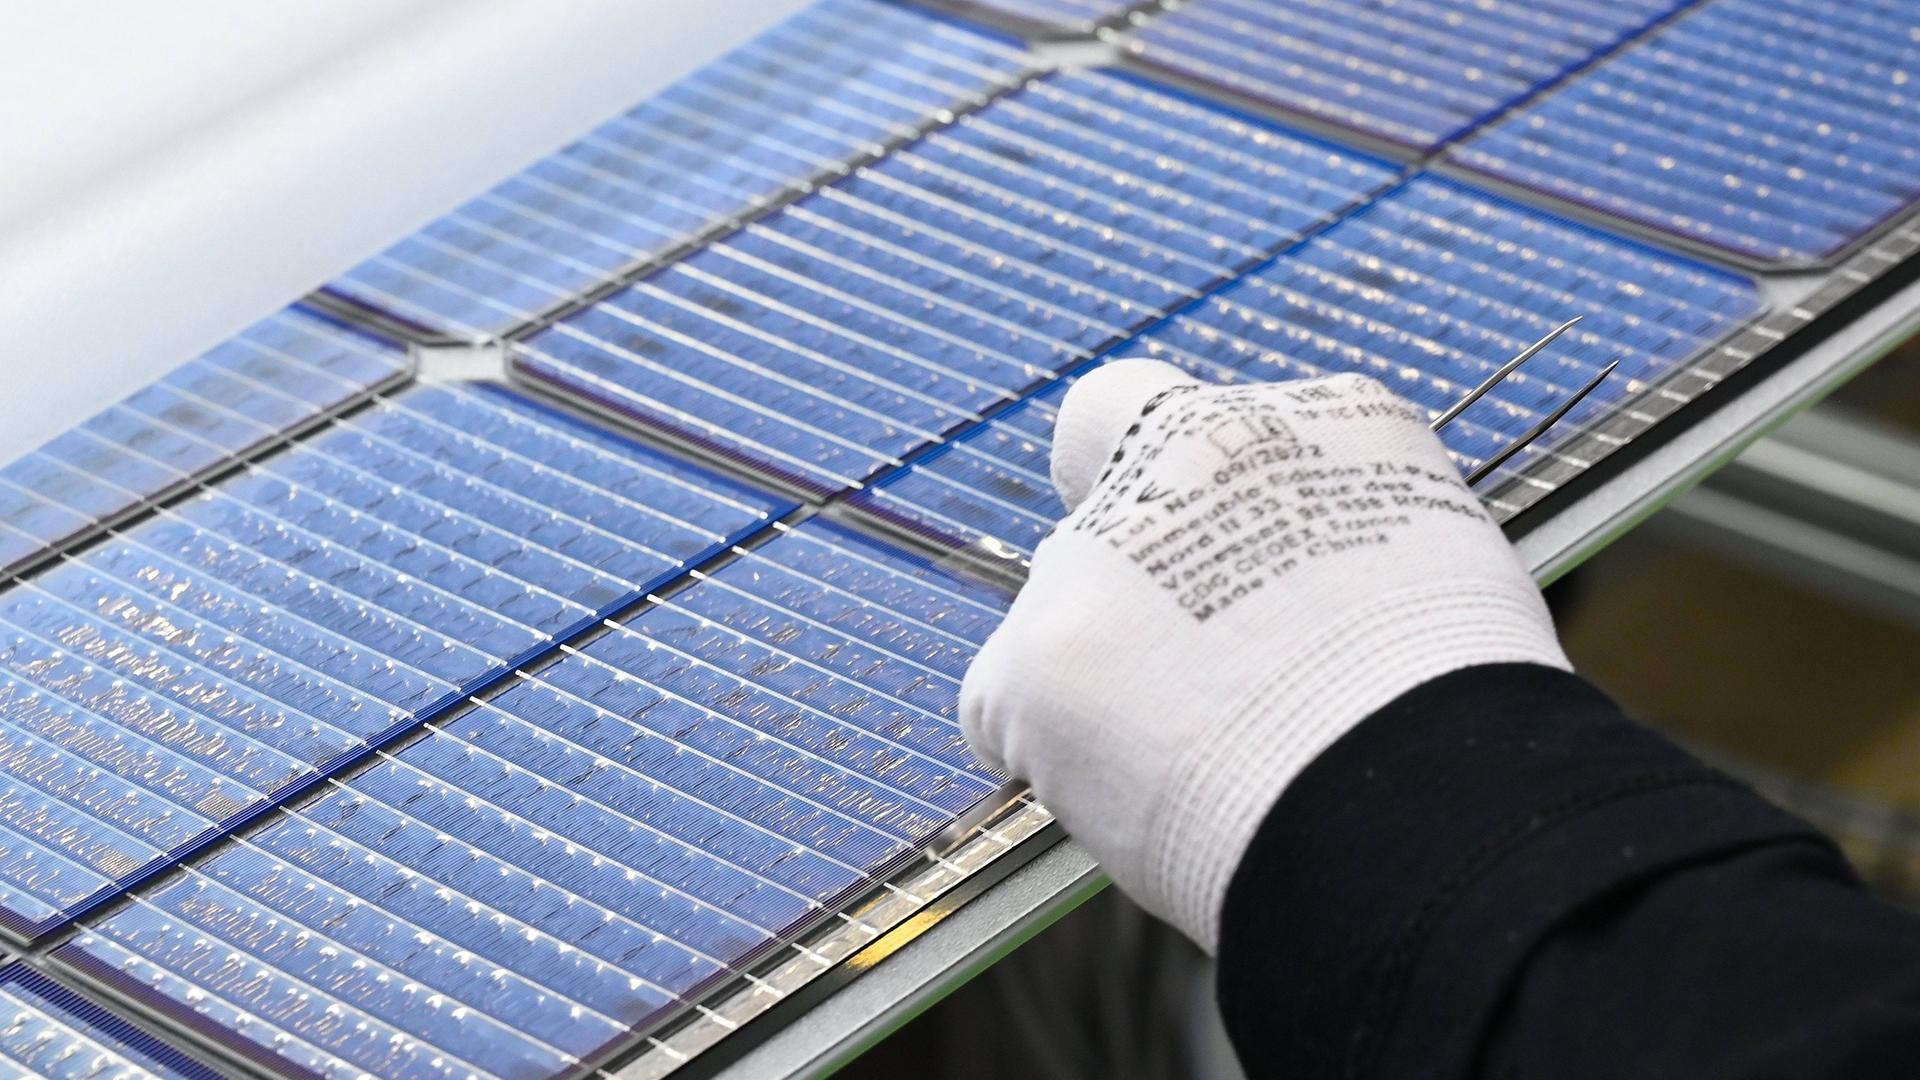 Solarindustrie: Besser nicht subventioniert